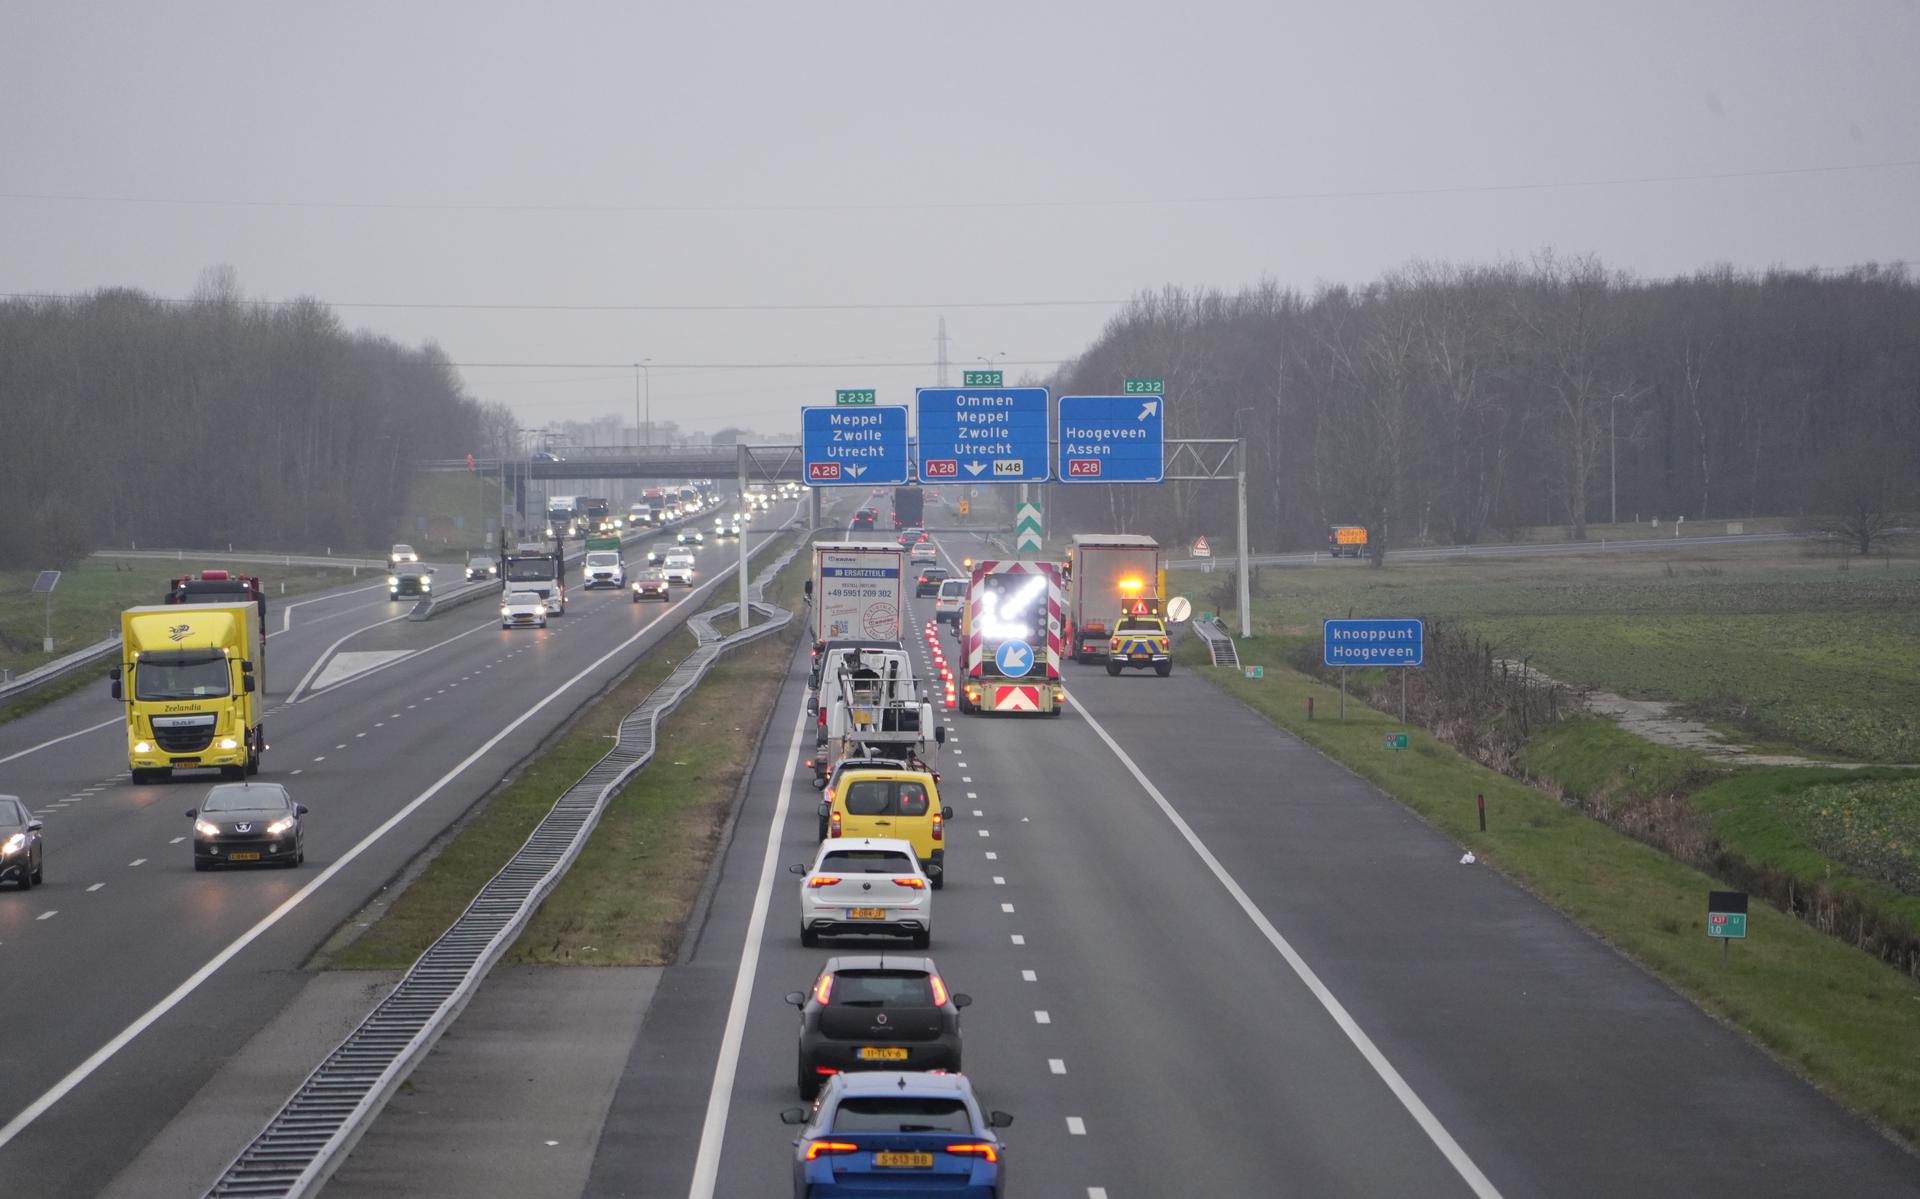 Fileleed op de A37 tussen Emmen en Hoogeveen ter hoogte van knooppunt Hoogeveen. Een vrachtwagen met pech zorgt ervoor dat er slechts 1 rijbaan open is, de rechterrijbaan is afgesloten voor de berging.